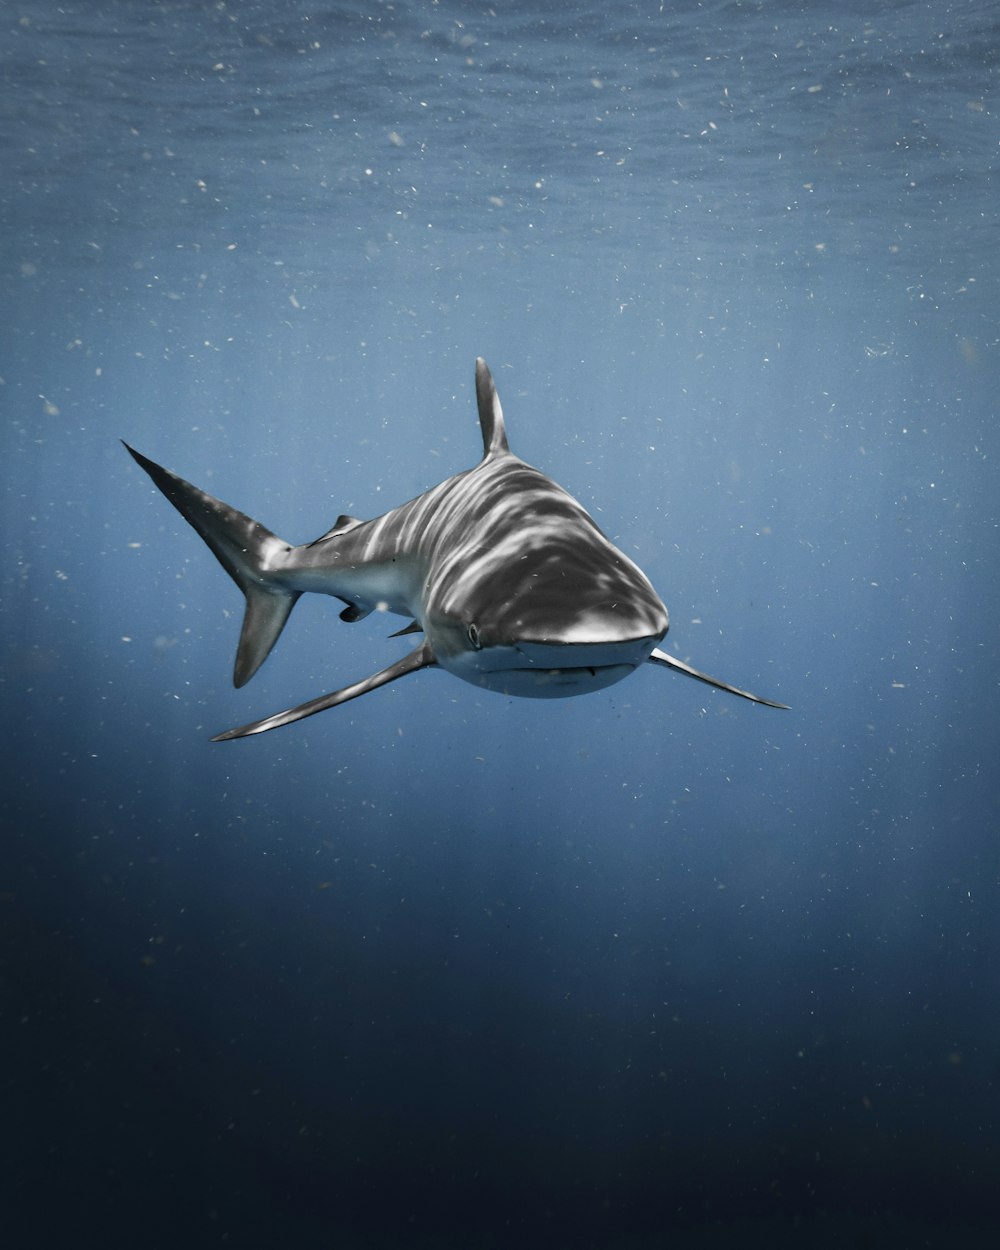 Un gran tiburón blanco nadando en el océano